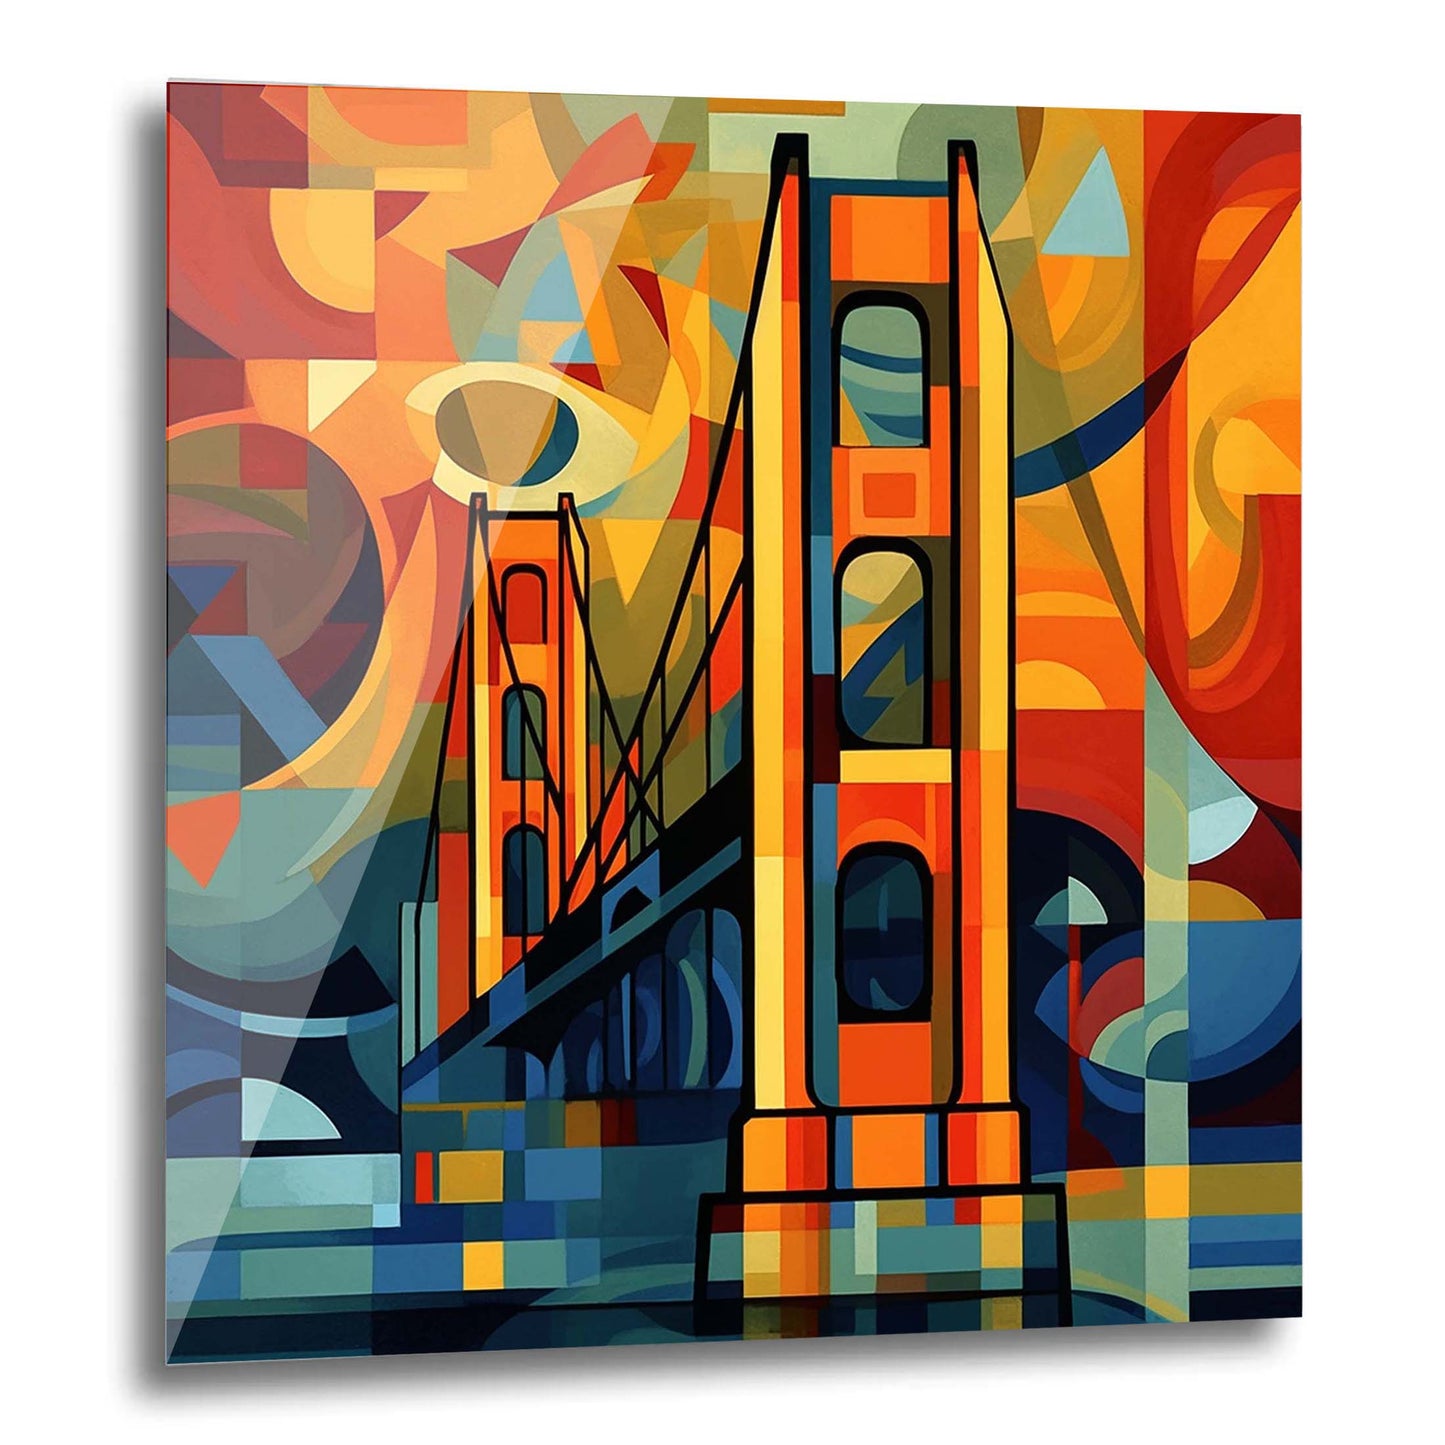 Golden Gate Bridge de San Francisco - Peinture murale dans le style de l'expressionnisme